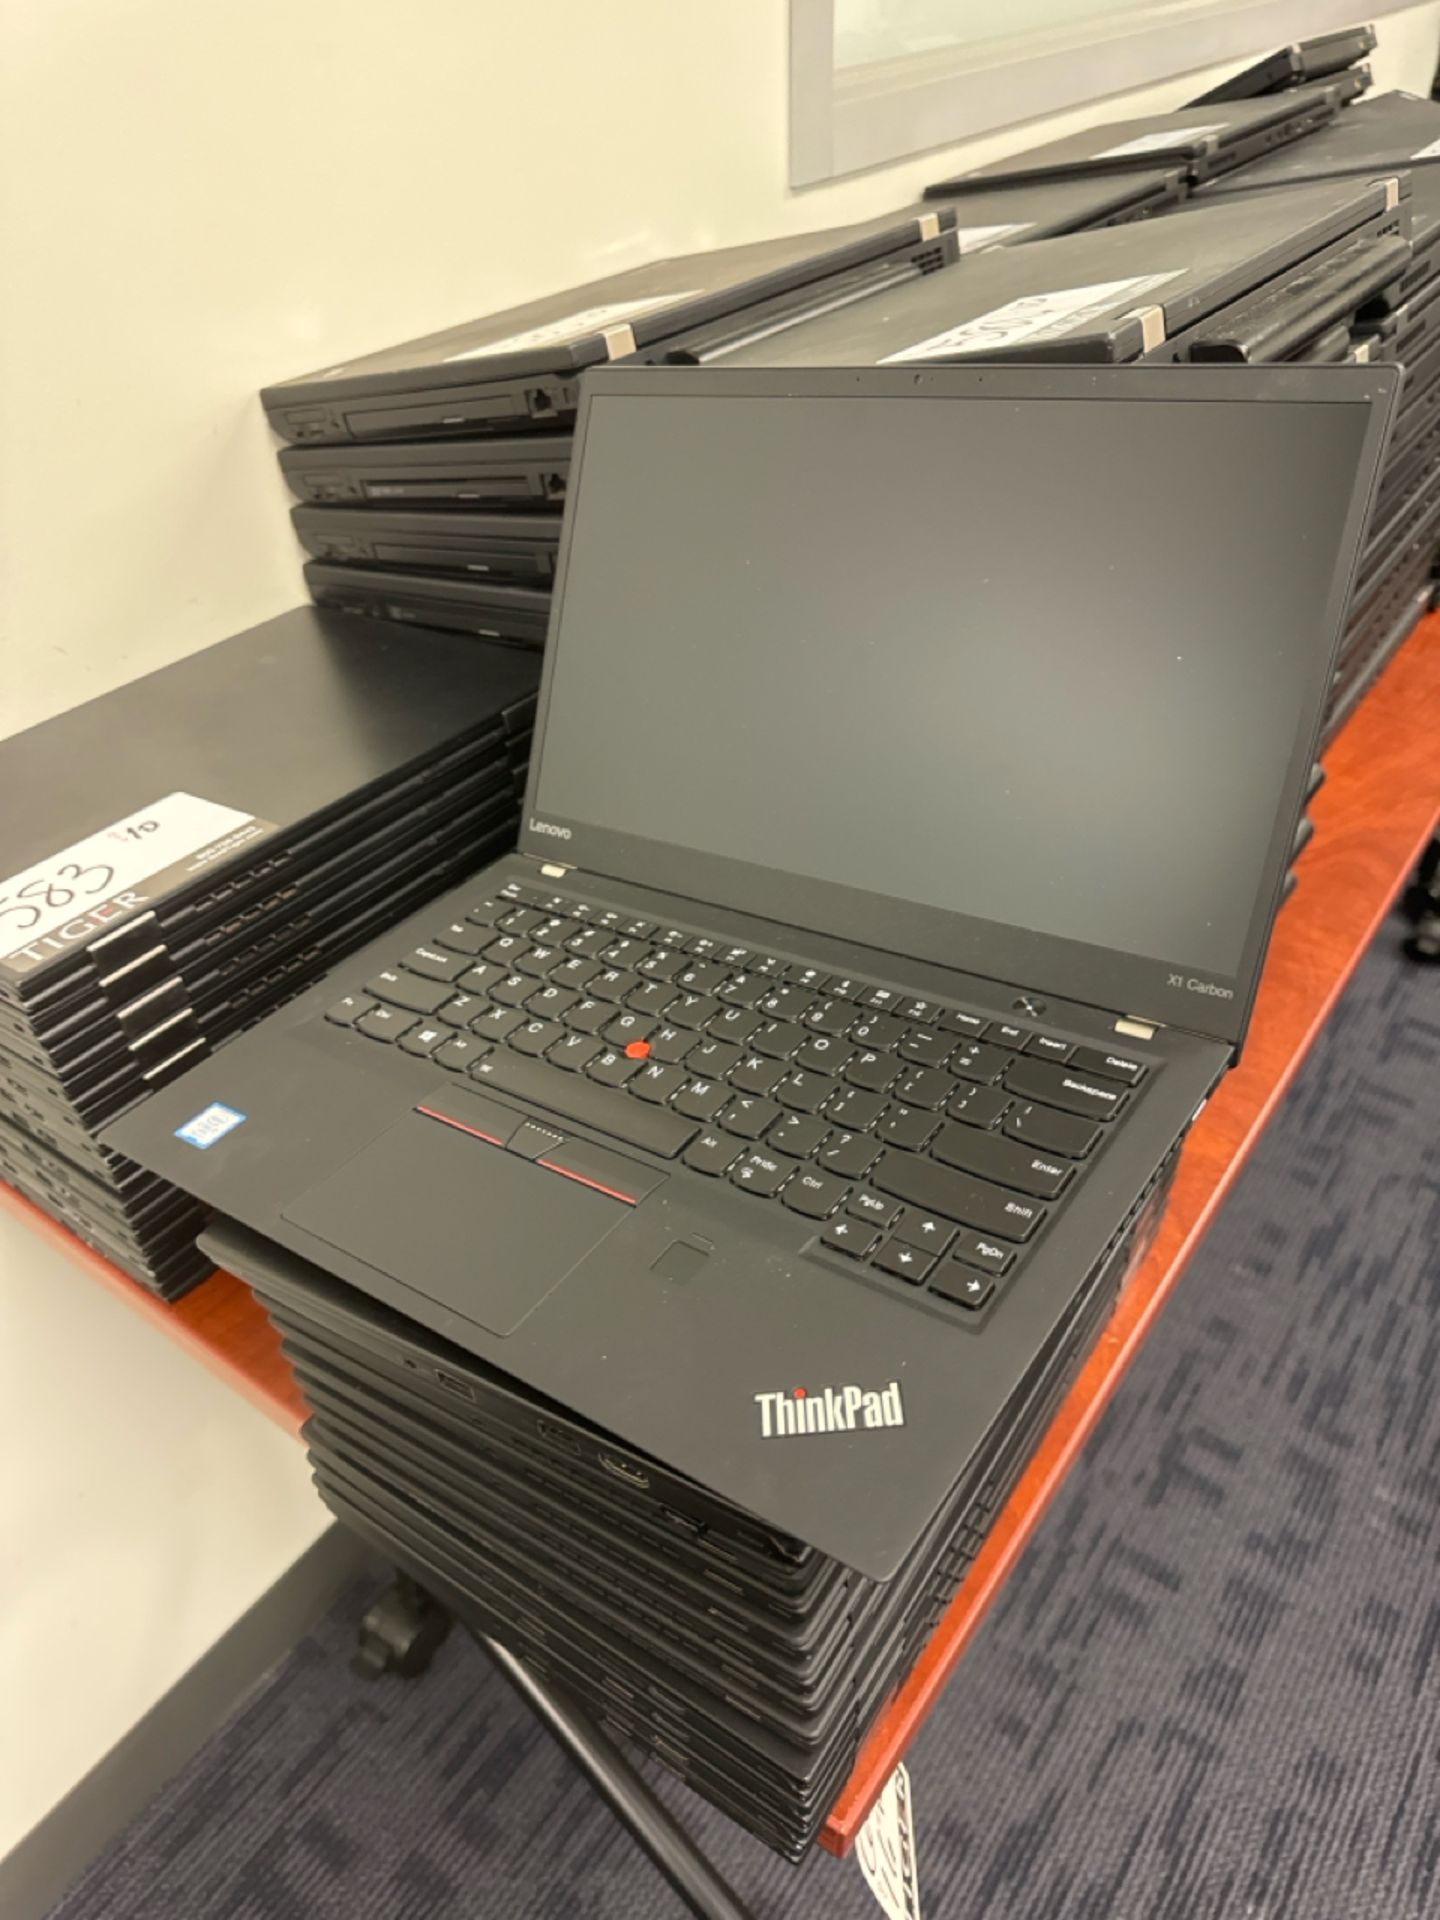 Lenovo Thinkpad Laptops - Image 2 of 3